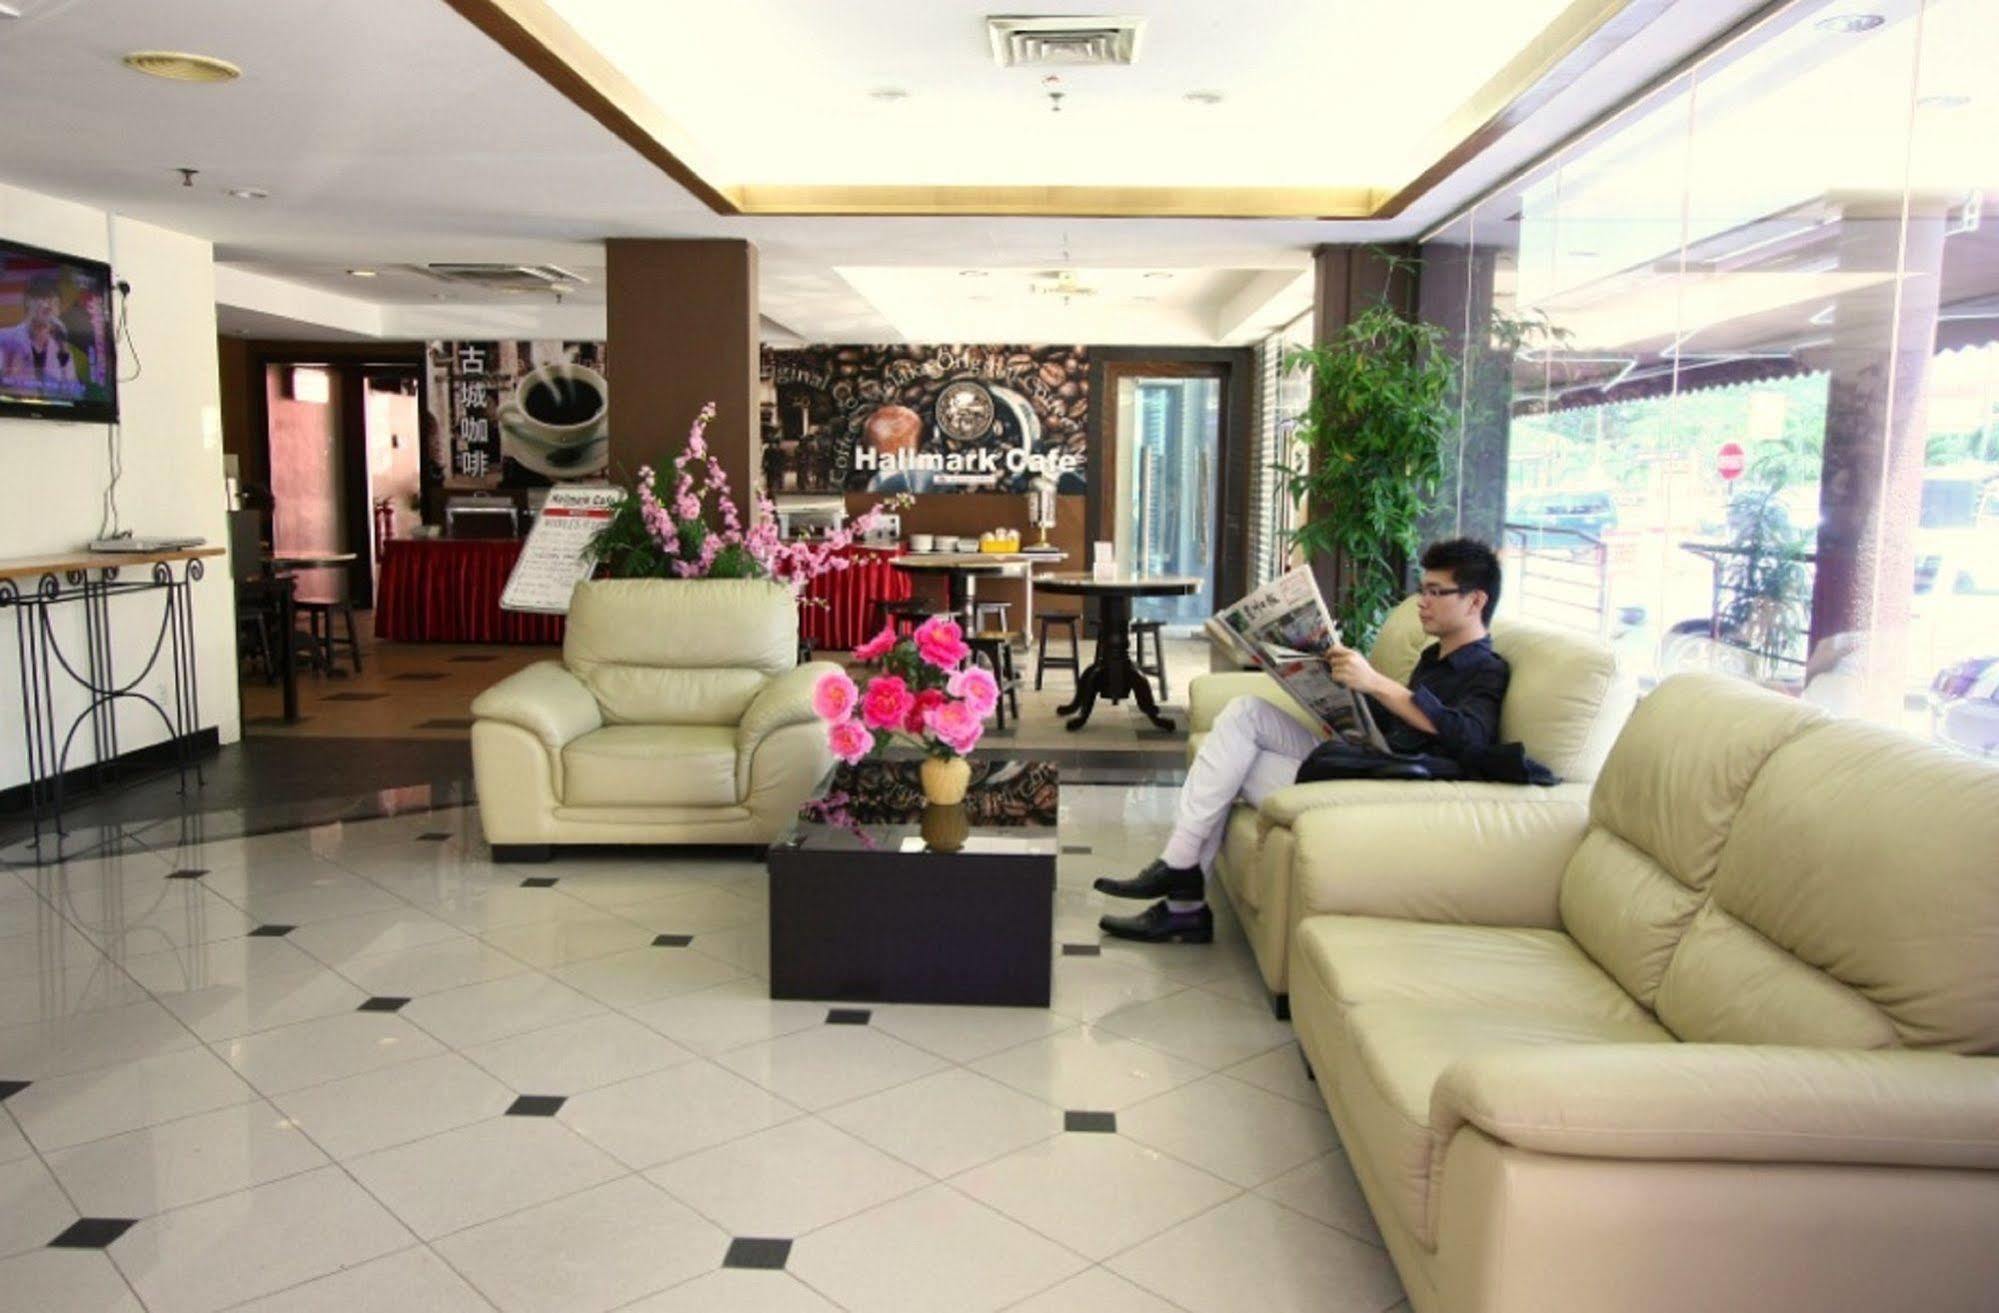 Hallmark Leisure Hotel Malacca Extérieur photo